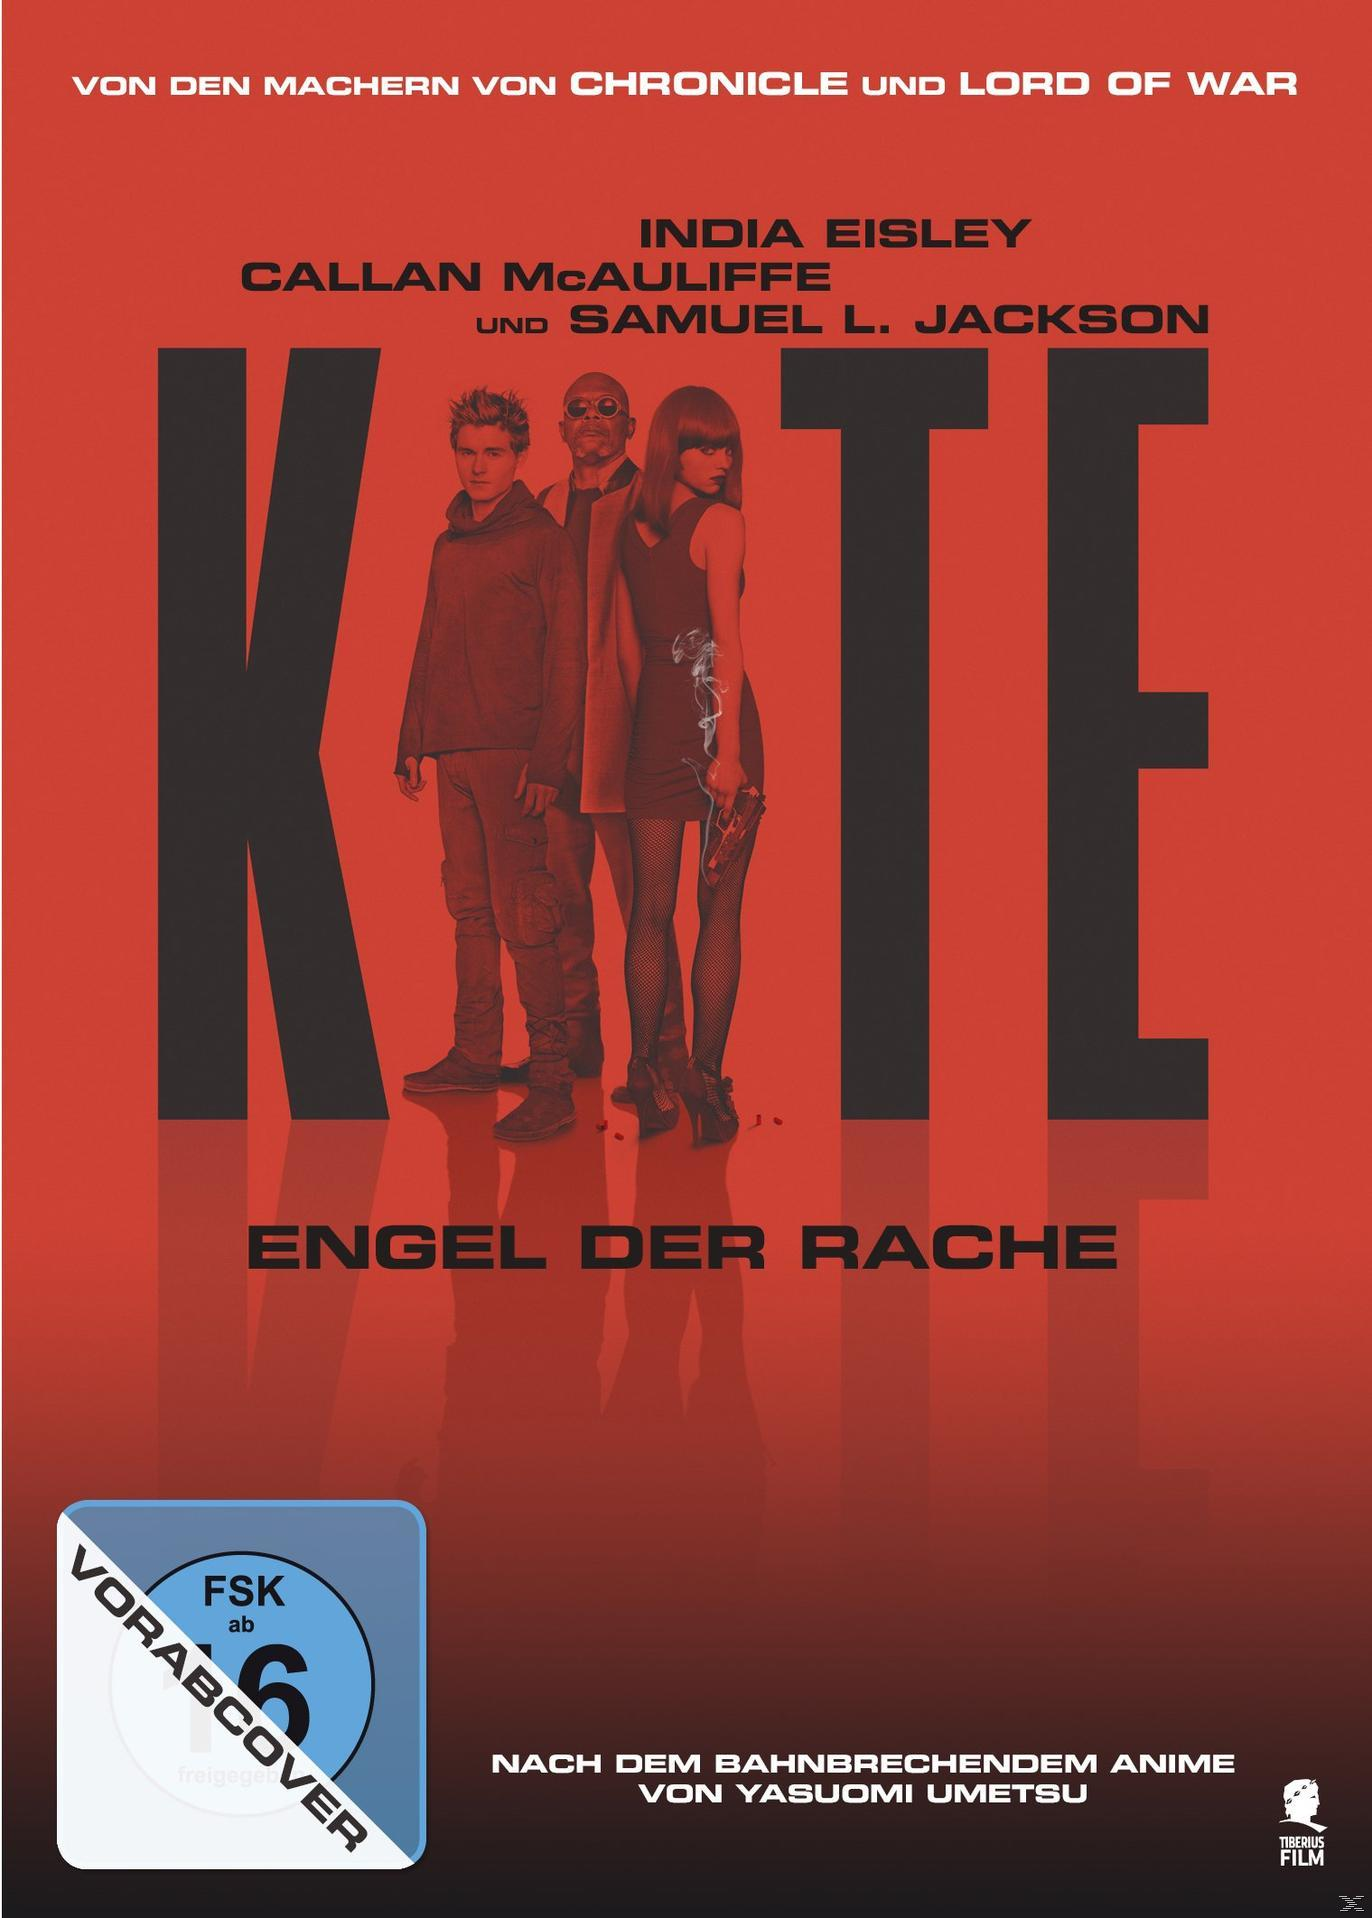 Kite DVD